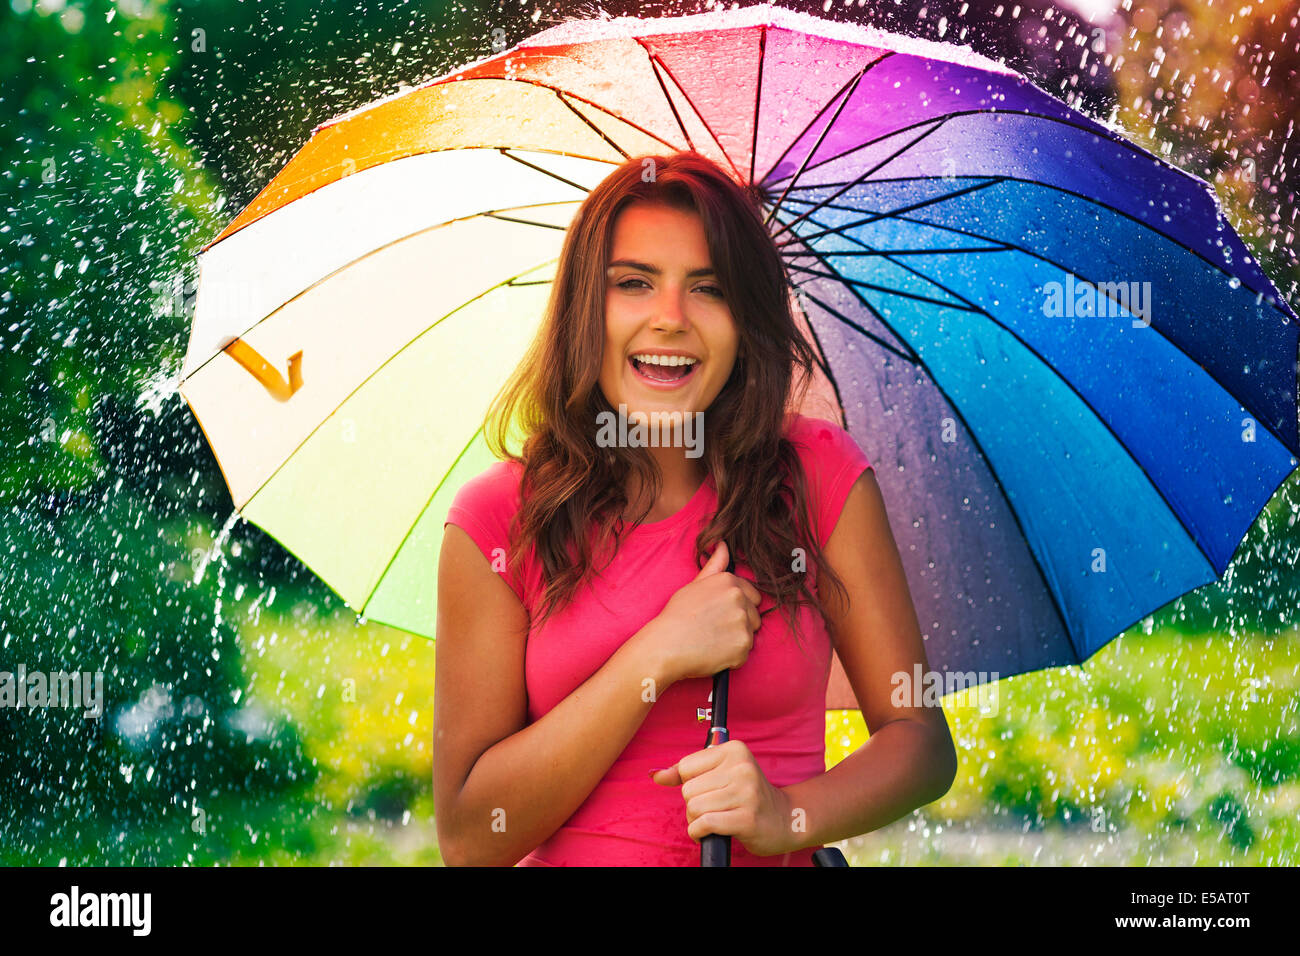 Funny time in summer rain Debica, Poland Stock Photo